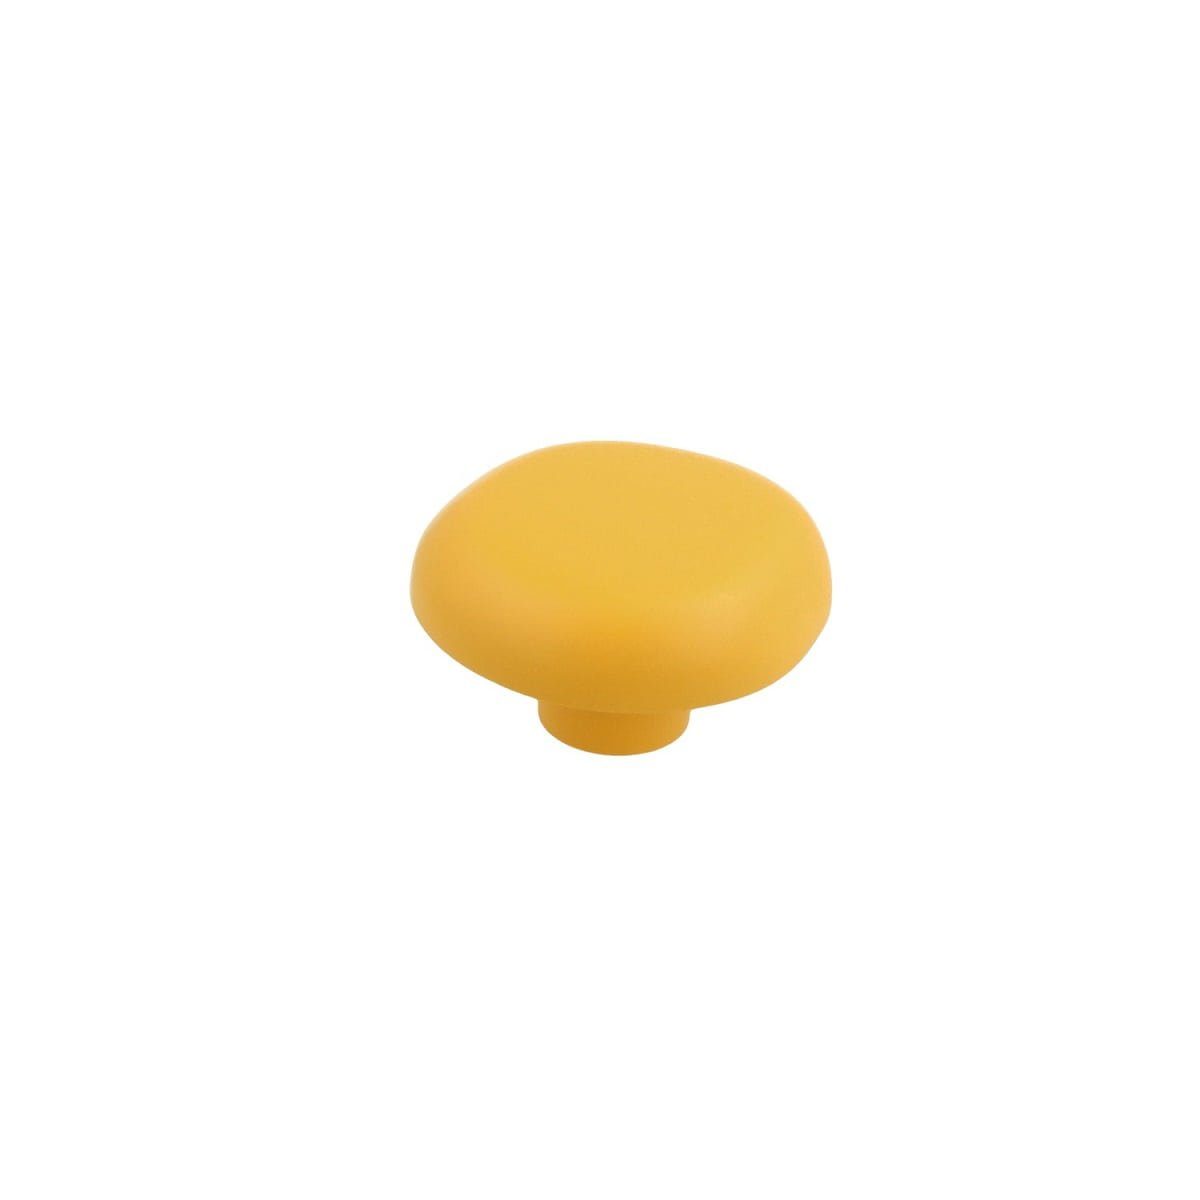 MS Beschläge Möbelbeschlag Möbelknopf Schrankknopf Kinderzimmerknopf Modell Gelber Pilz Kommodenk